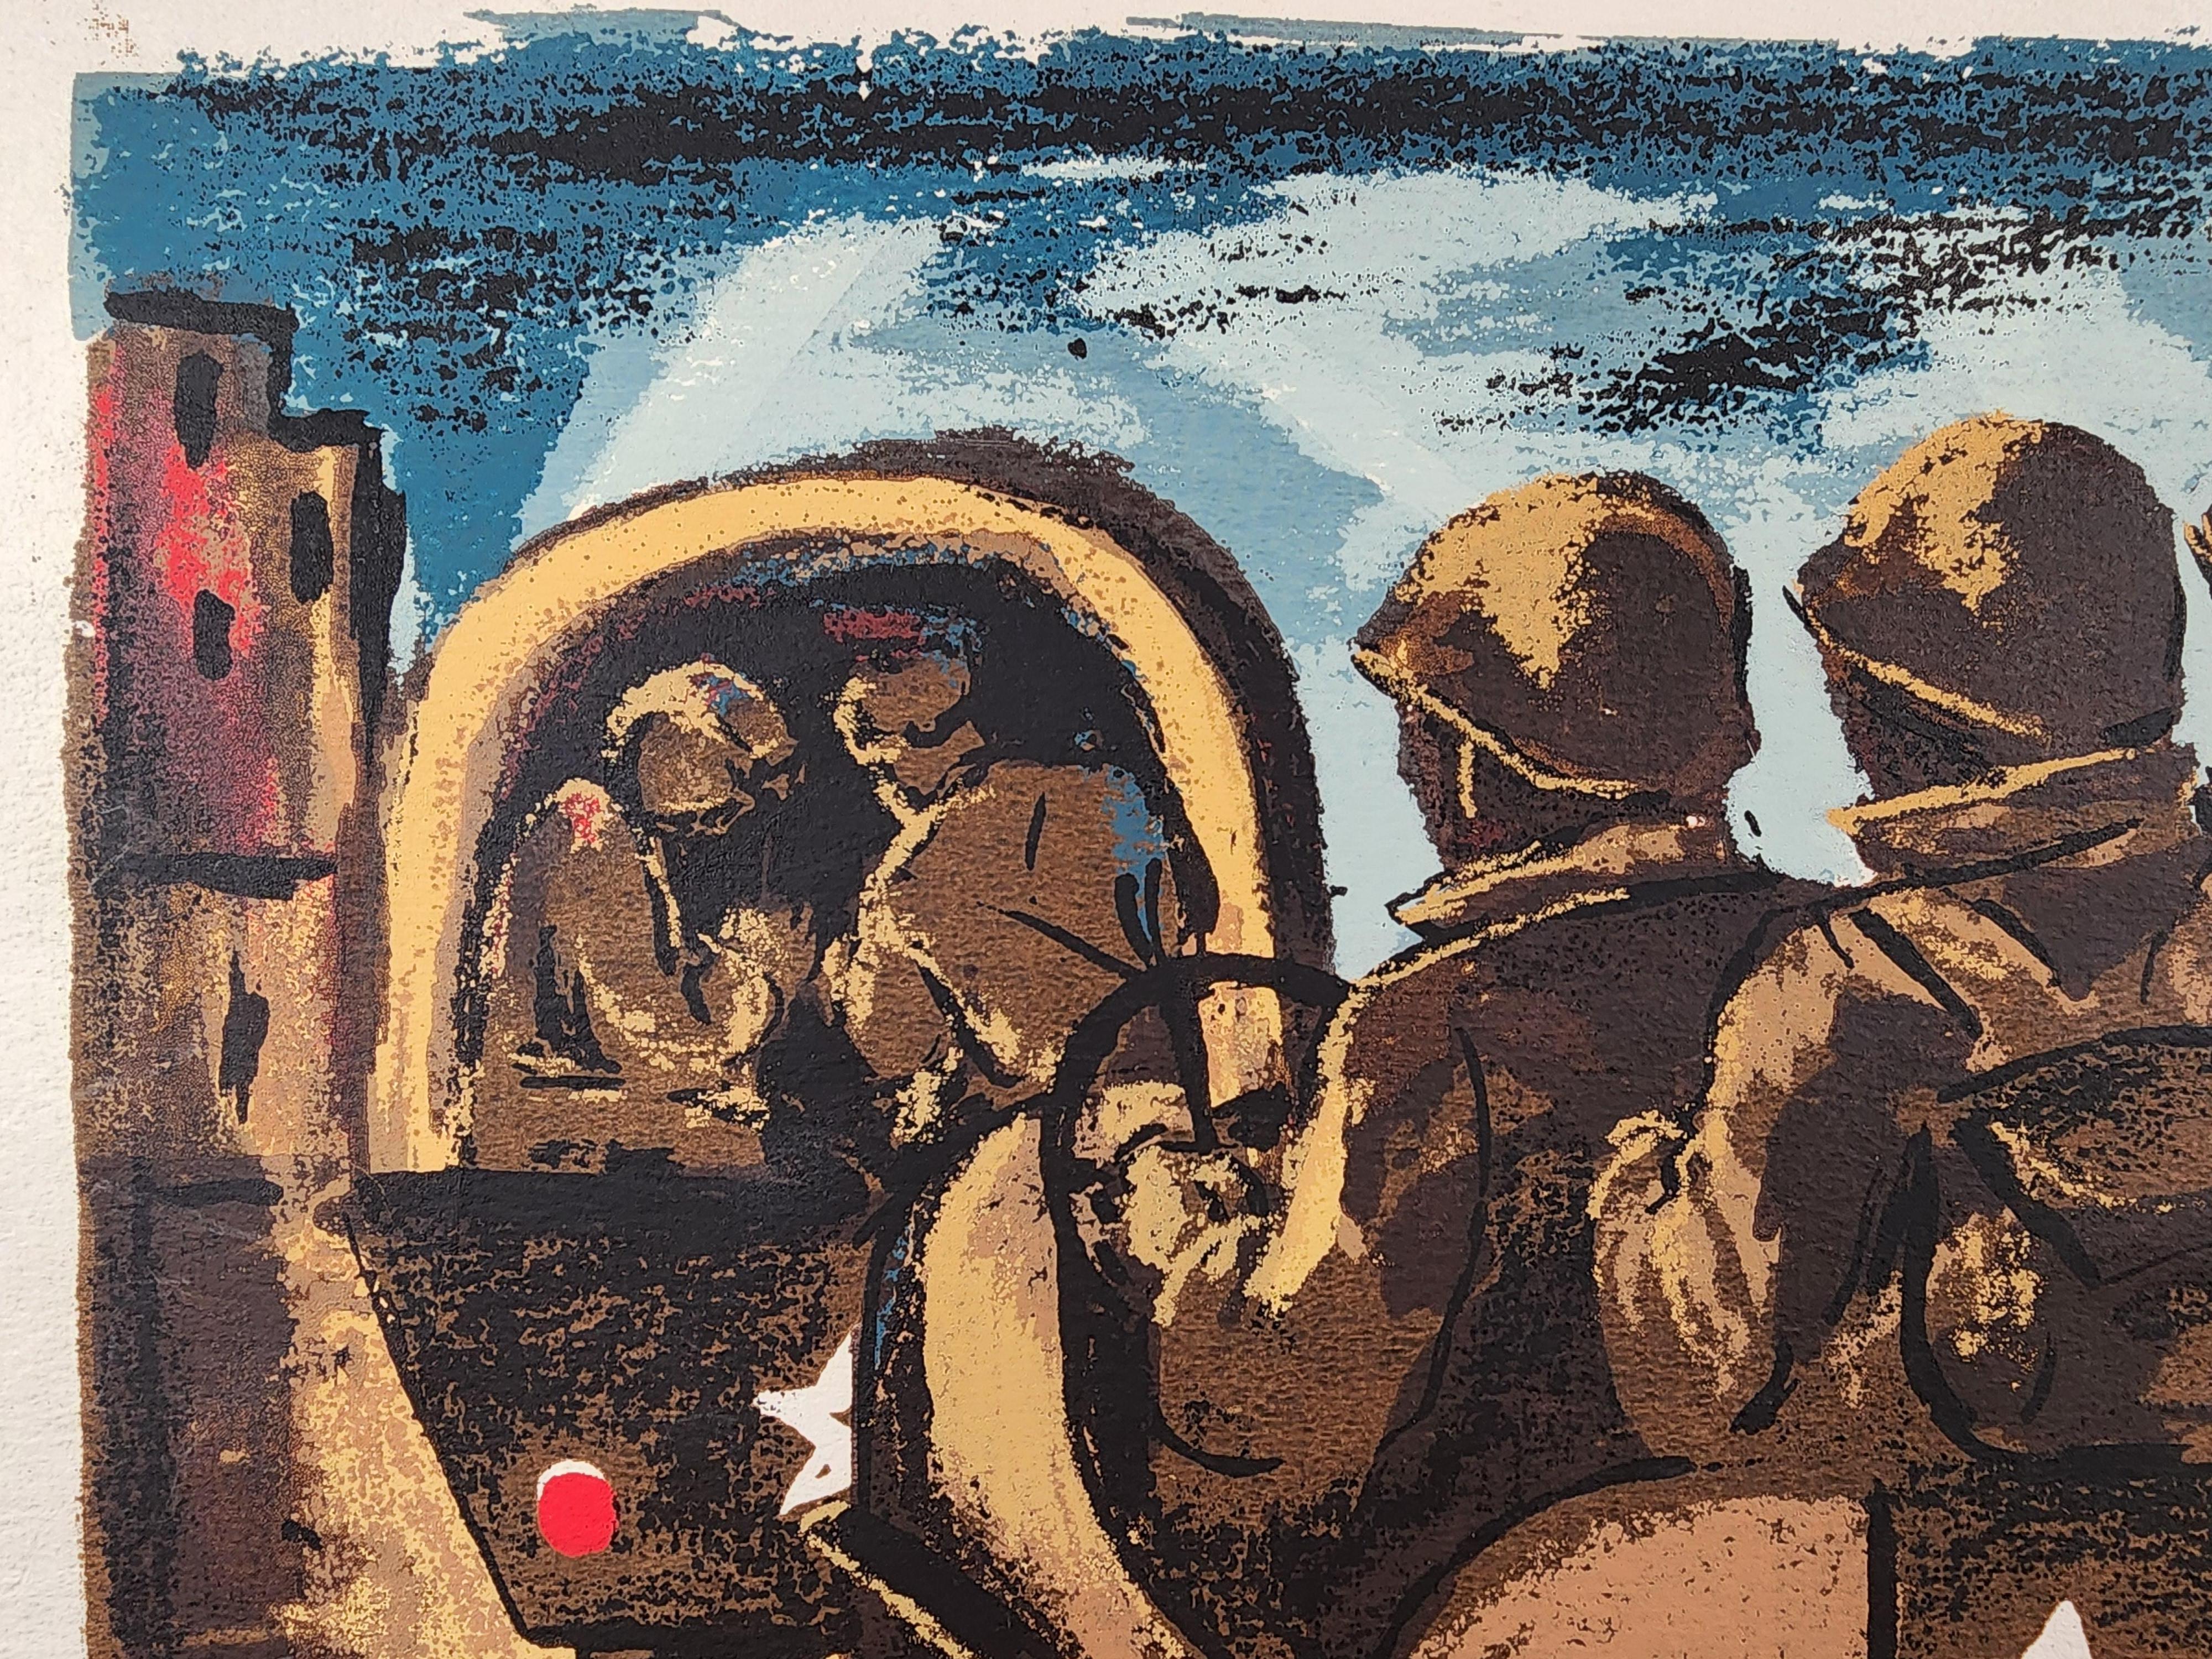 Ein Siebdruck der New Yorker Künstlerin Riva Helfond zum Thema 2. Weltkrieg, der Soldaten in einem Konvoi zeigt.
Helfond ist bekannt für ihre Teilnahme an der WPA und für ihre Siebdrucke.
Signiert im Bild und nochmals am Rand in der rechten unteren